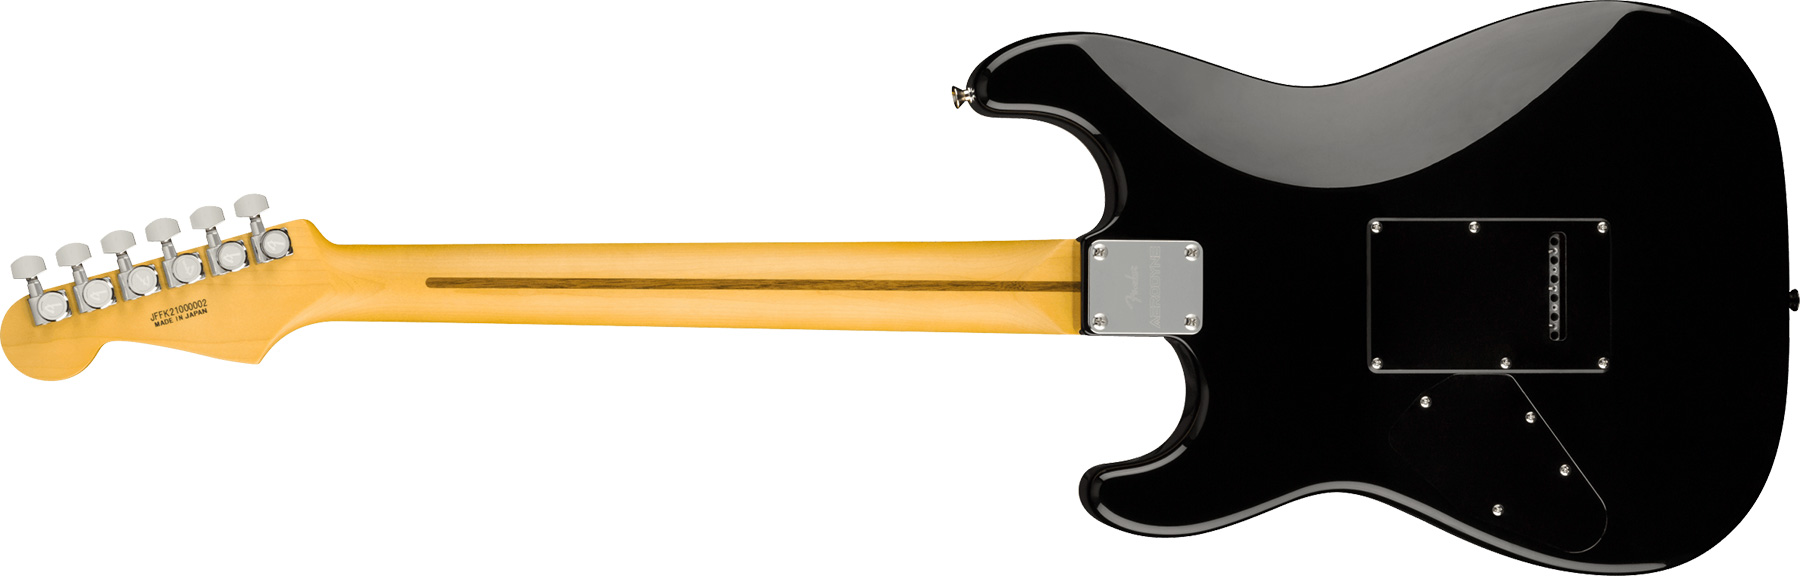 Fender Strat Aerodyne Special Jap Trem Hss Mn - Hot Rod Burst - Guitarra eléctrica con forma de str. - Variation 1